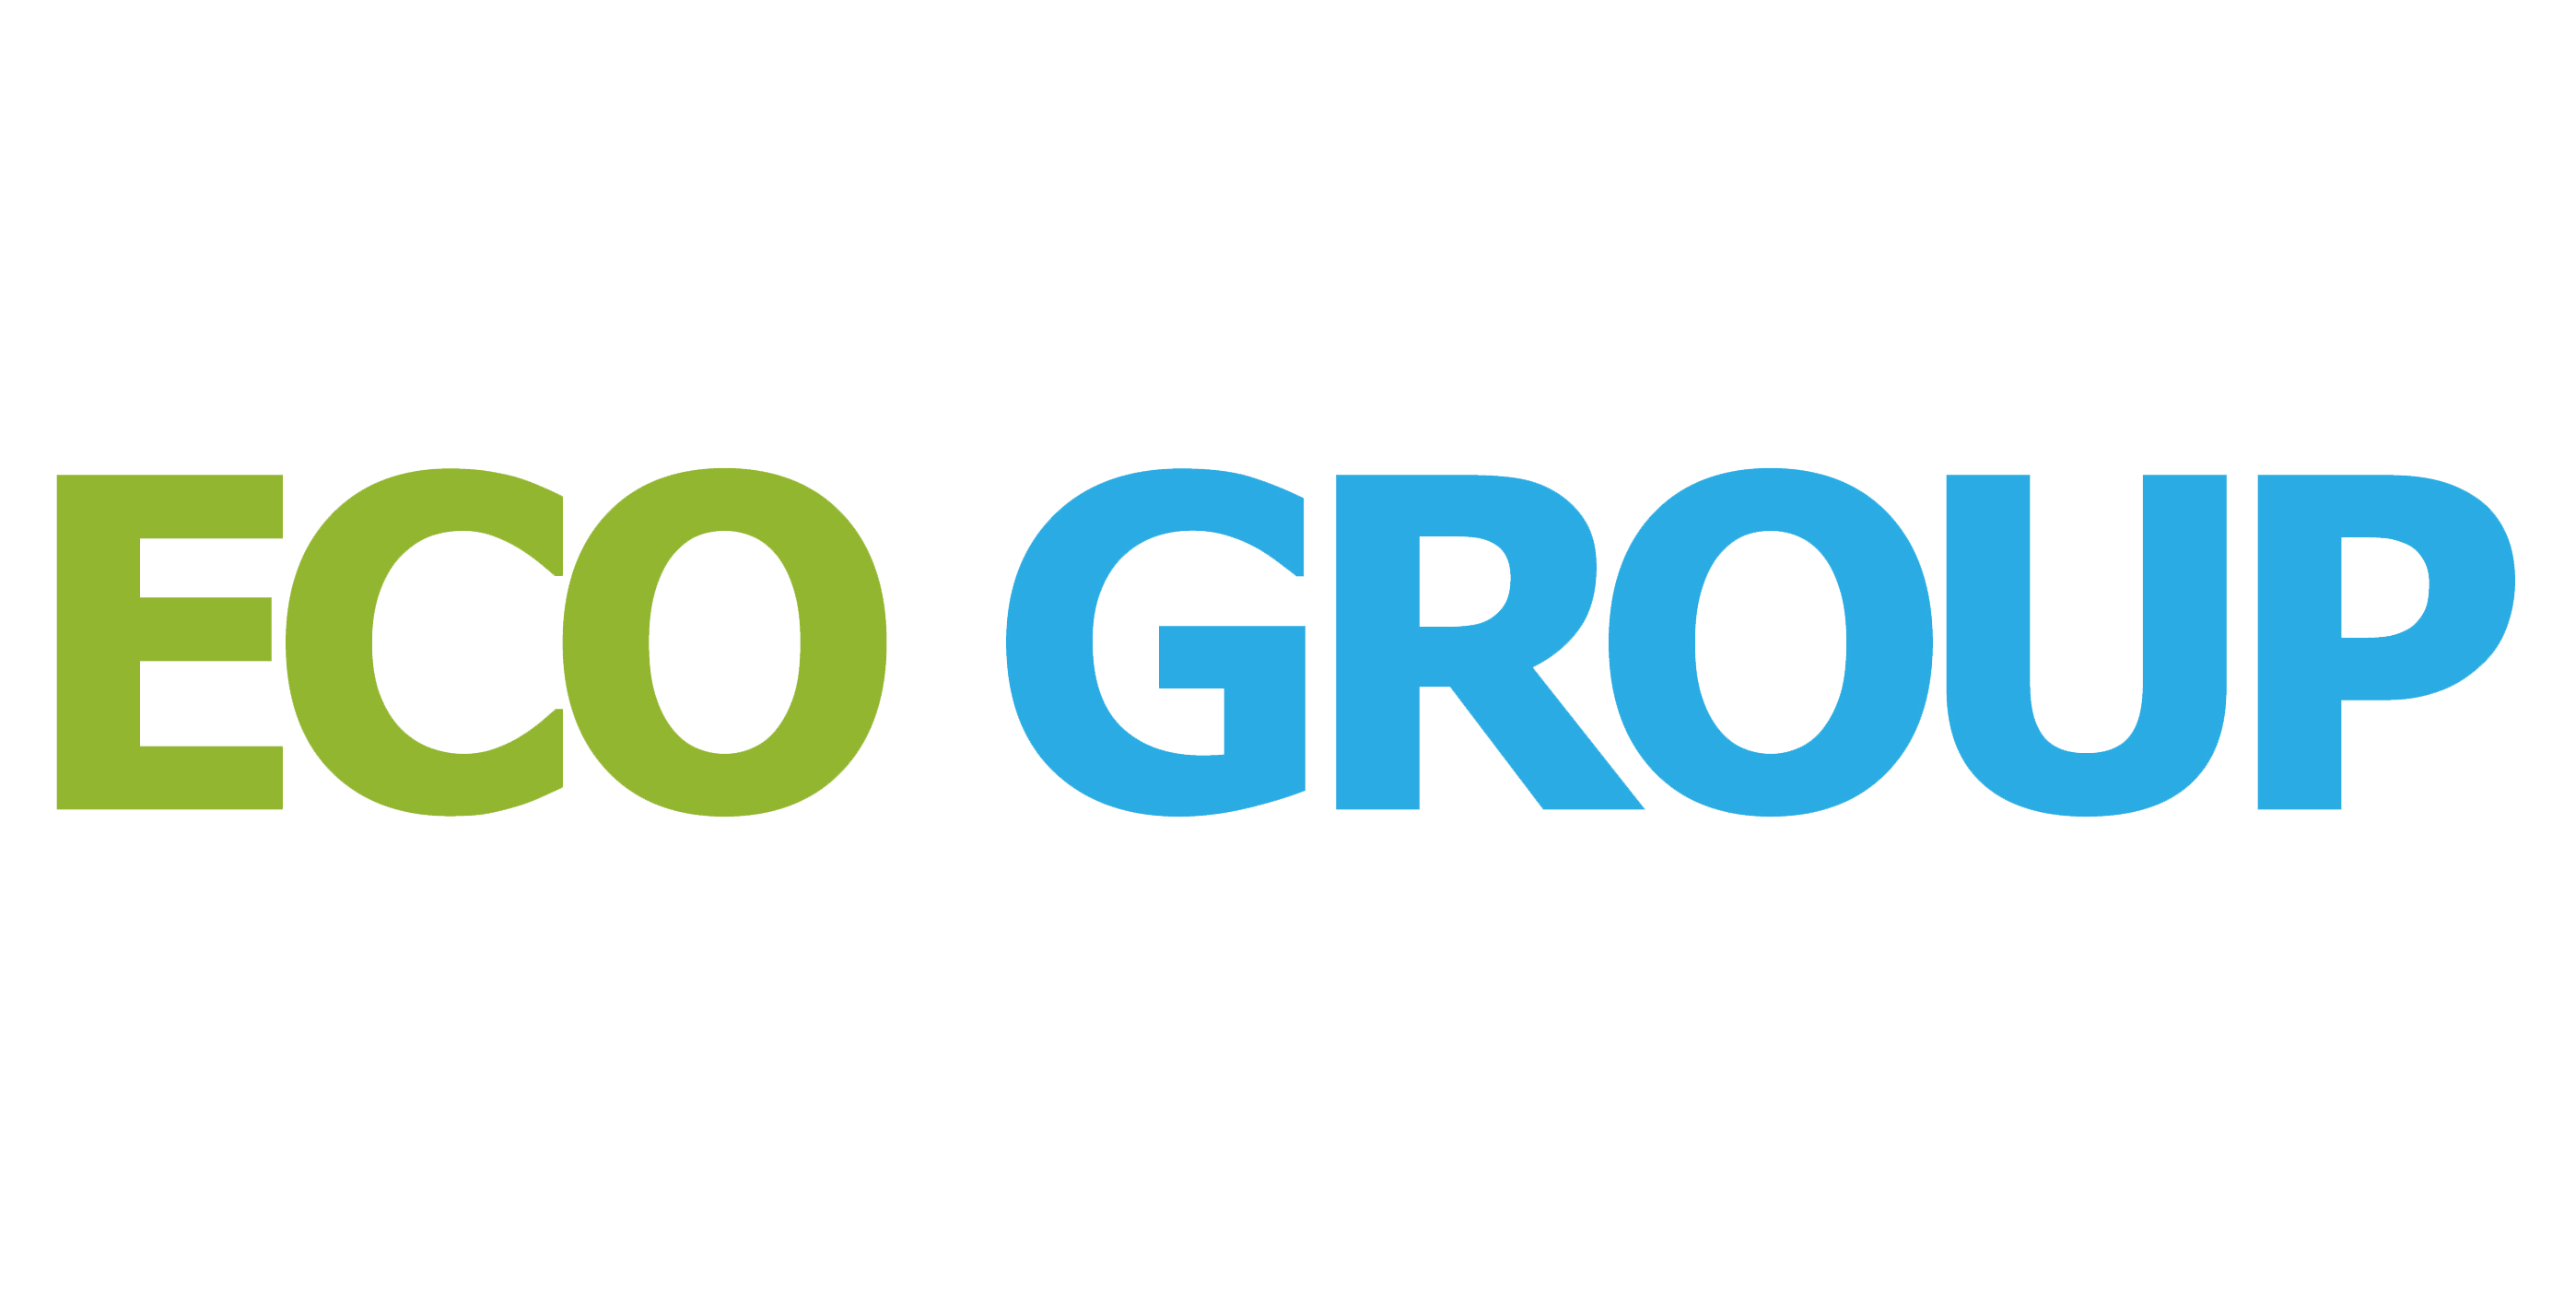 Eco Group